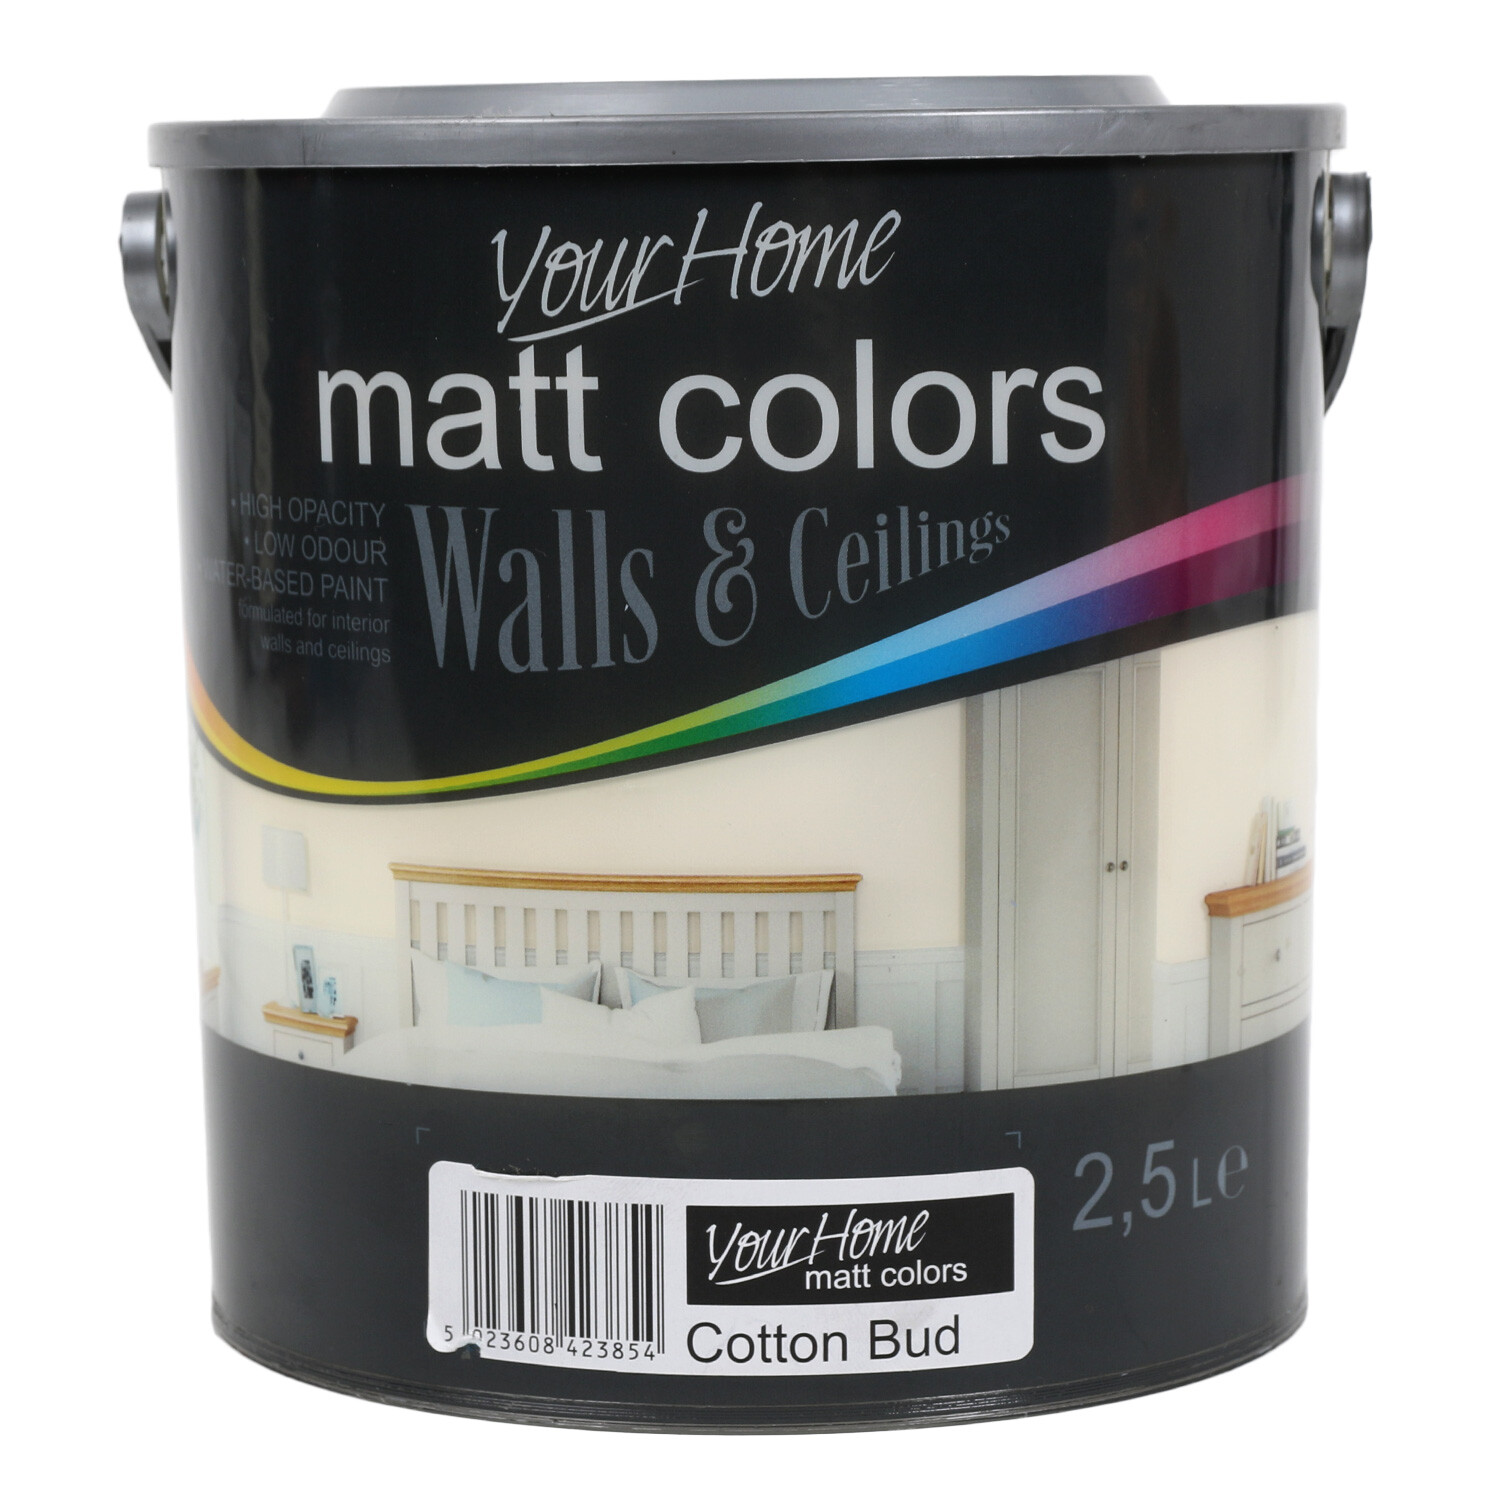 Your Home Walls & Ceilings Cotton Bud Matt Emulsion Paint 2.5L Image 1